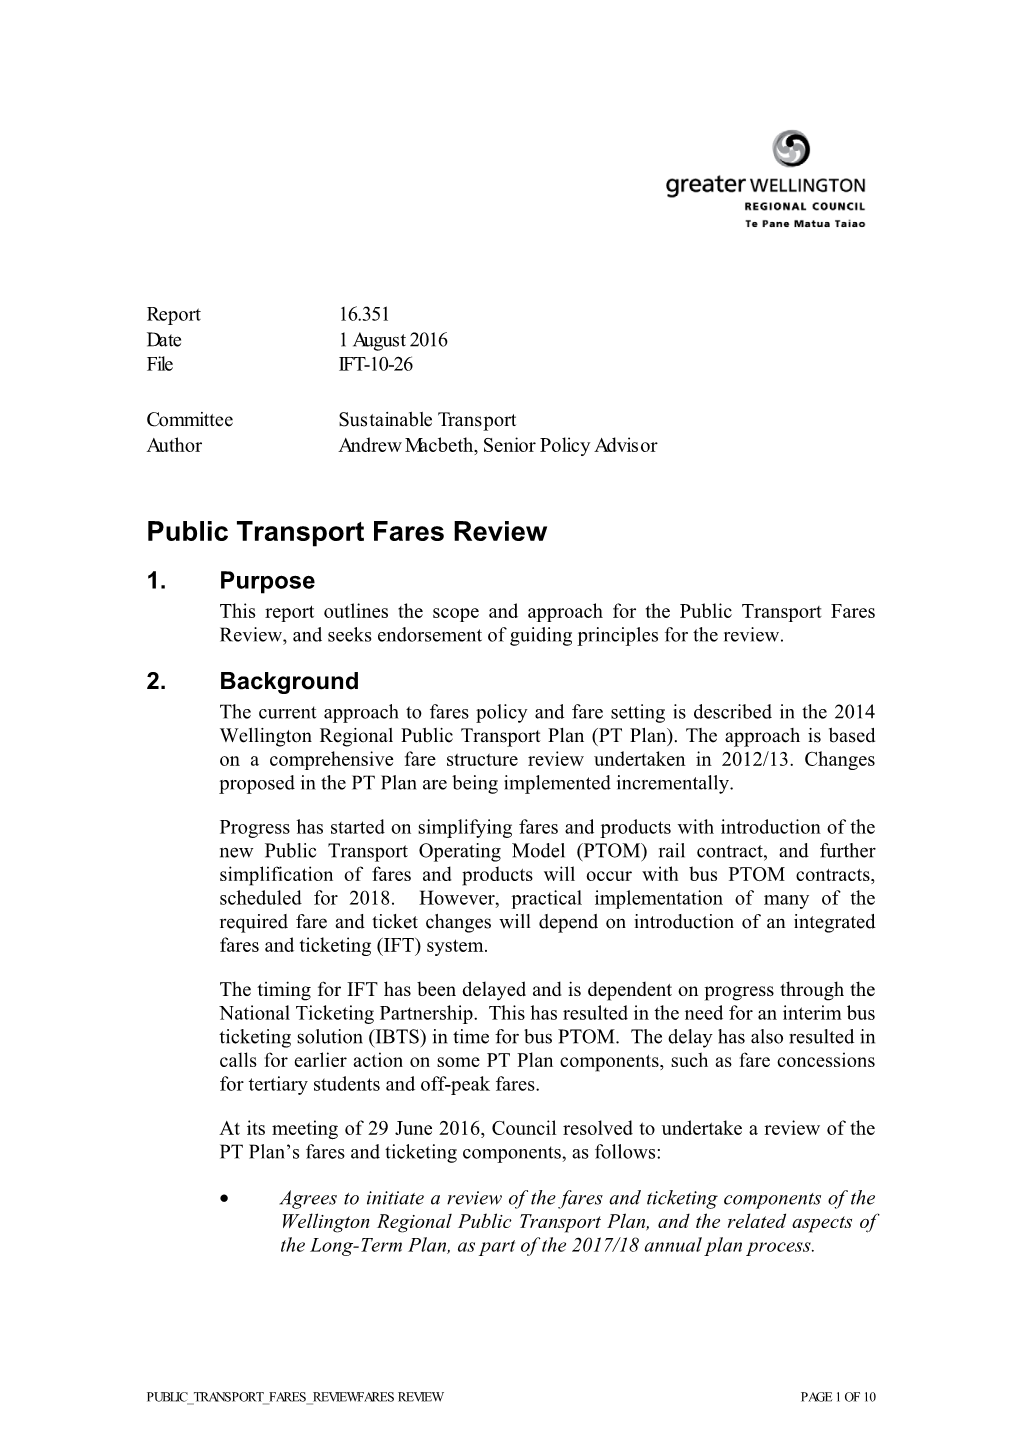 Public Transport Fares Review 1